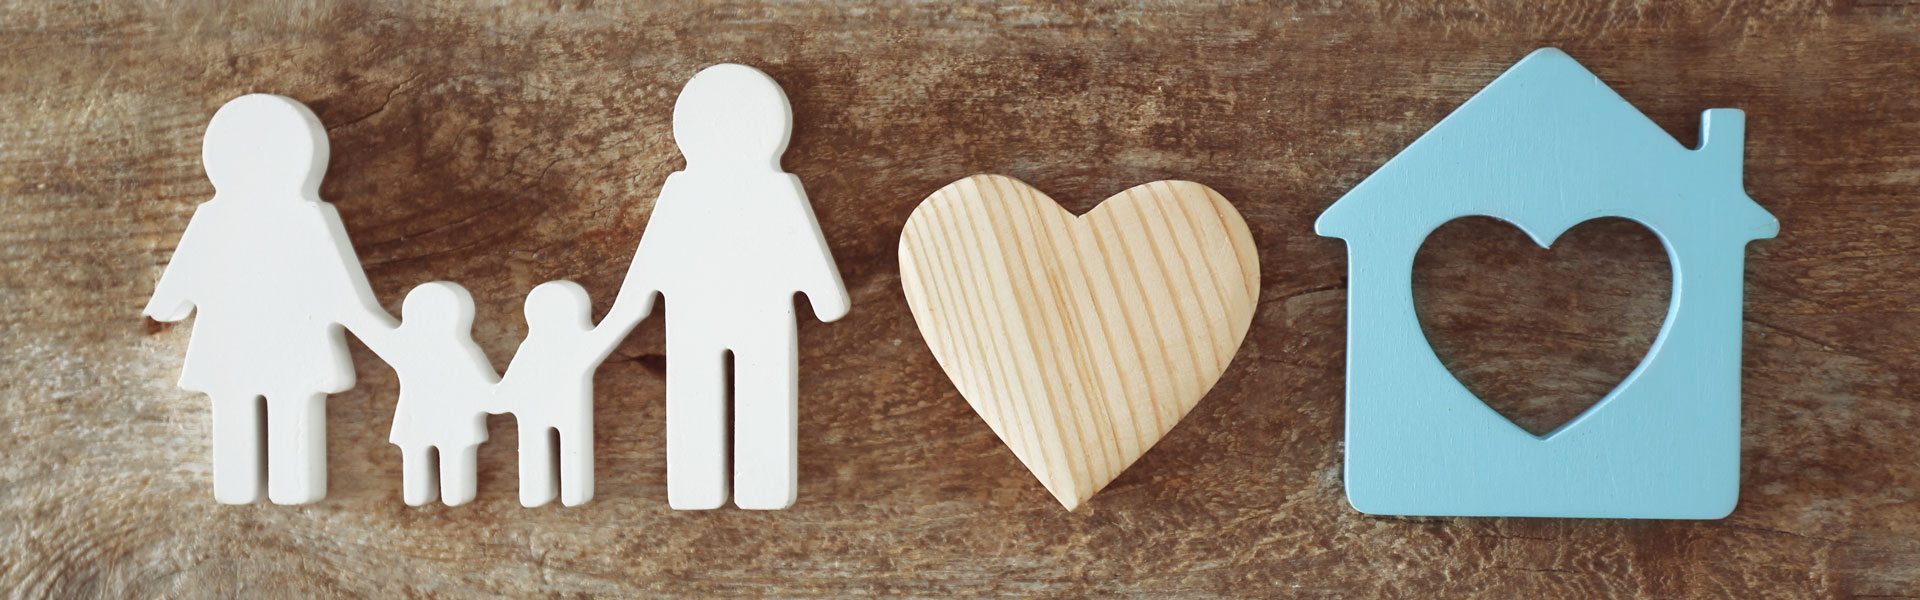 Photo de personnage illustrant une famille, un coeur et une maison sur un fond texturé de bois